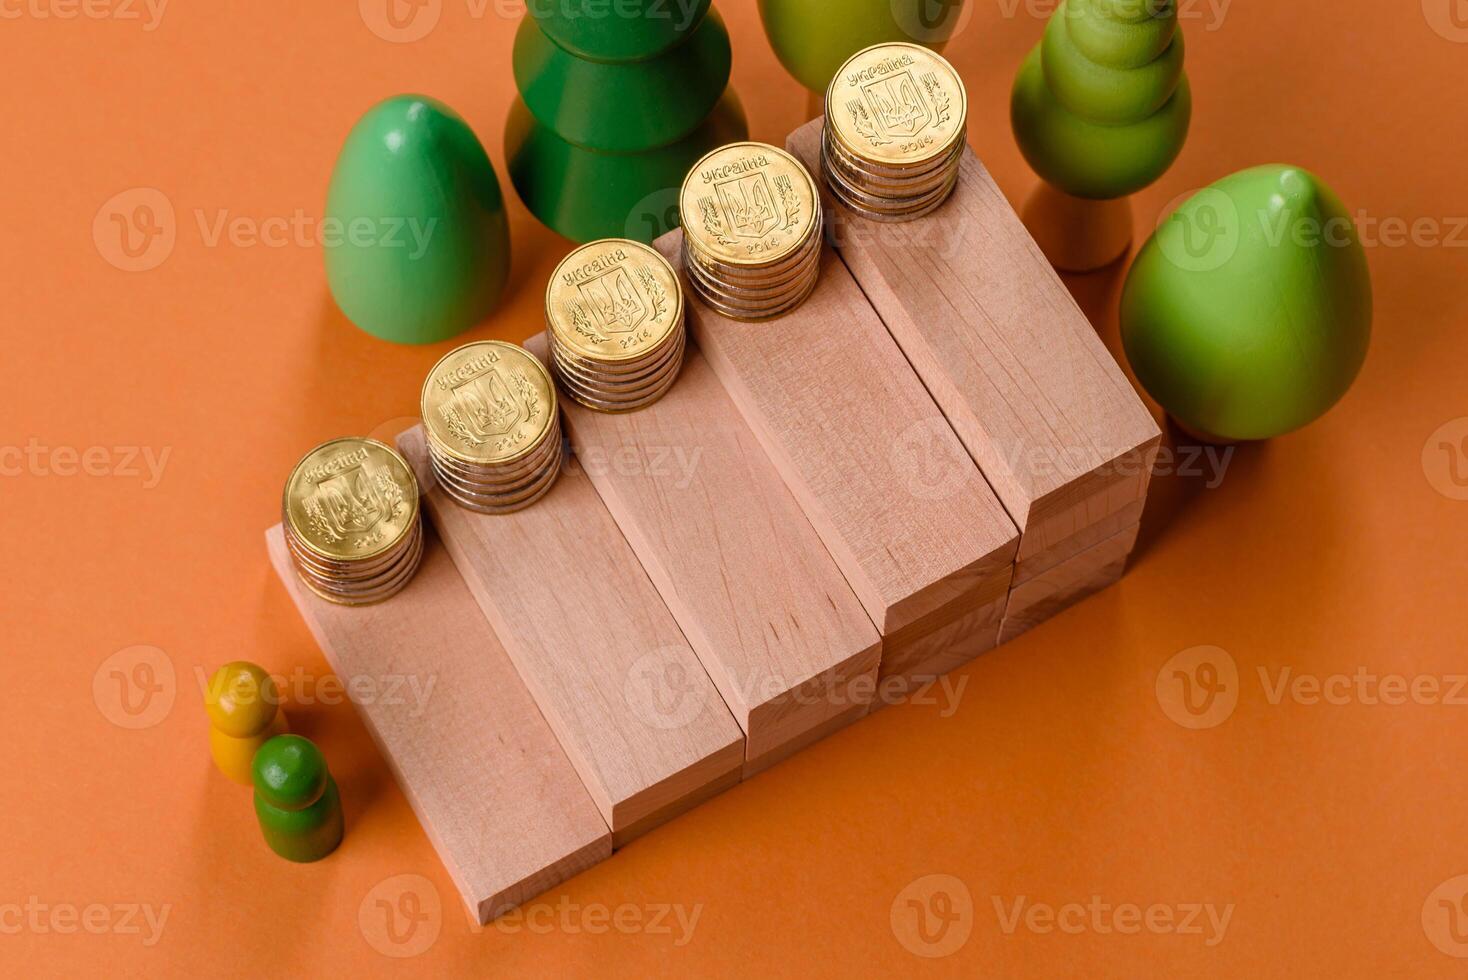 conceptual composição do de madeira passos com moedas, modelo do uma casa foto